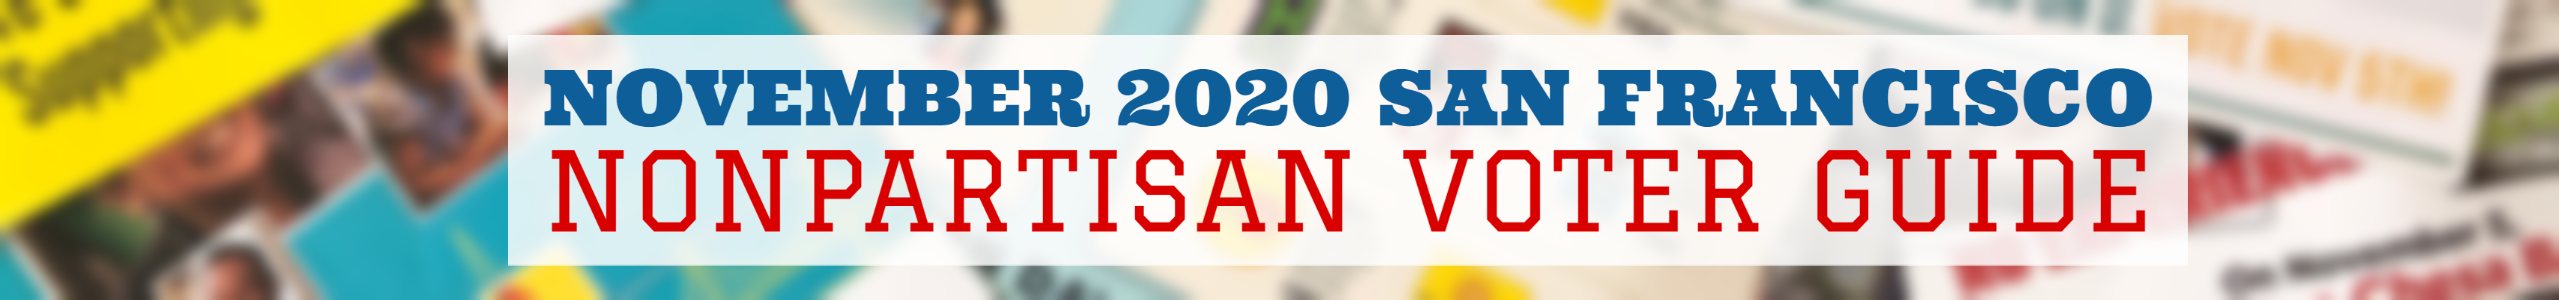 November 2020 San Francisco Nonpartisan Voter Guide